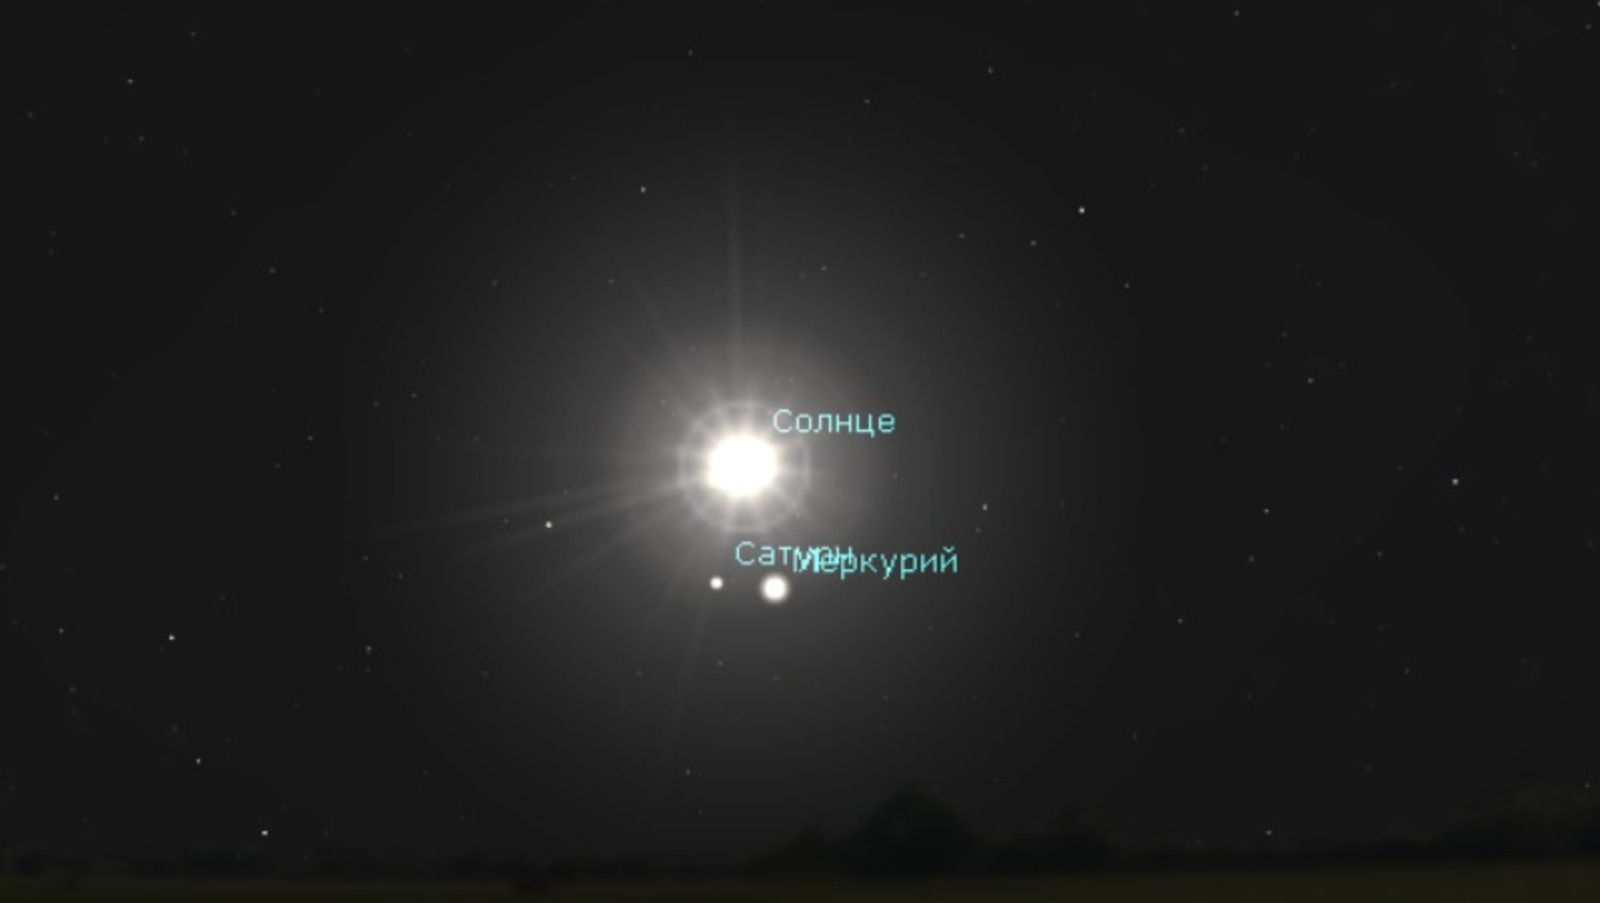 сайт уфимского городского планетария  Солнце, Сатурн и Меркурий на небе 28 февраля (вид при отсутствии атмосферы)